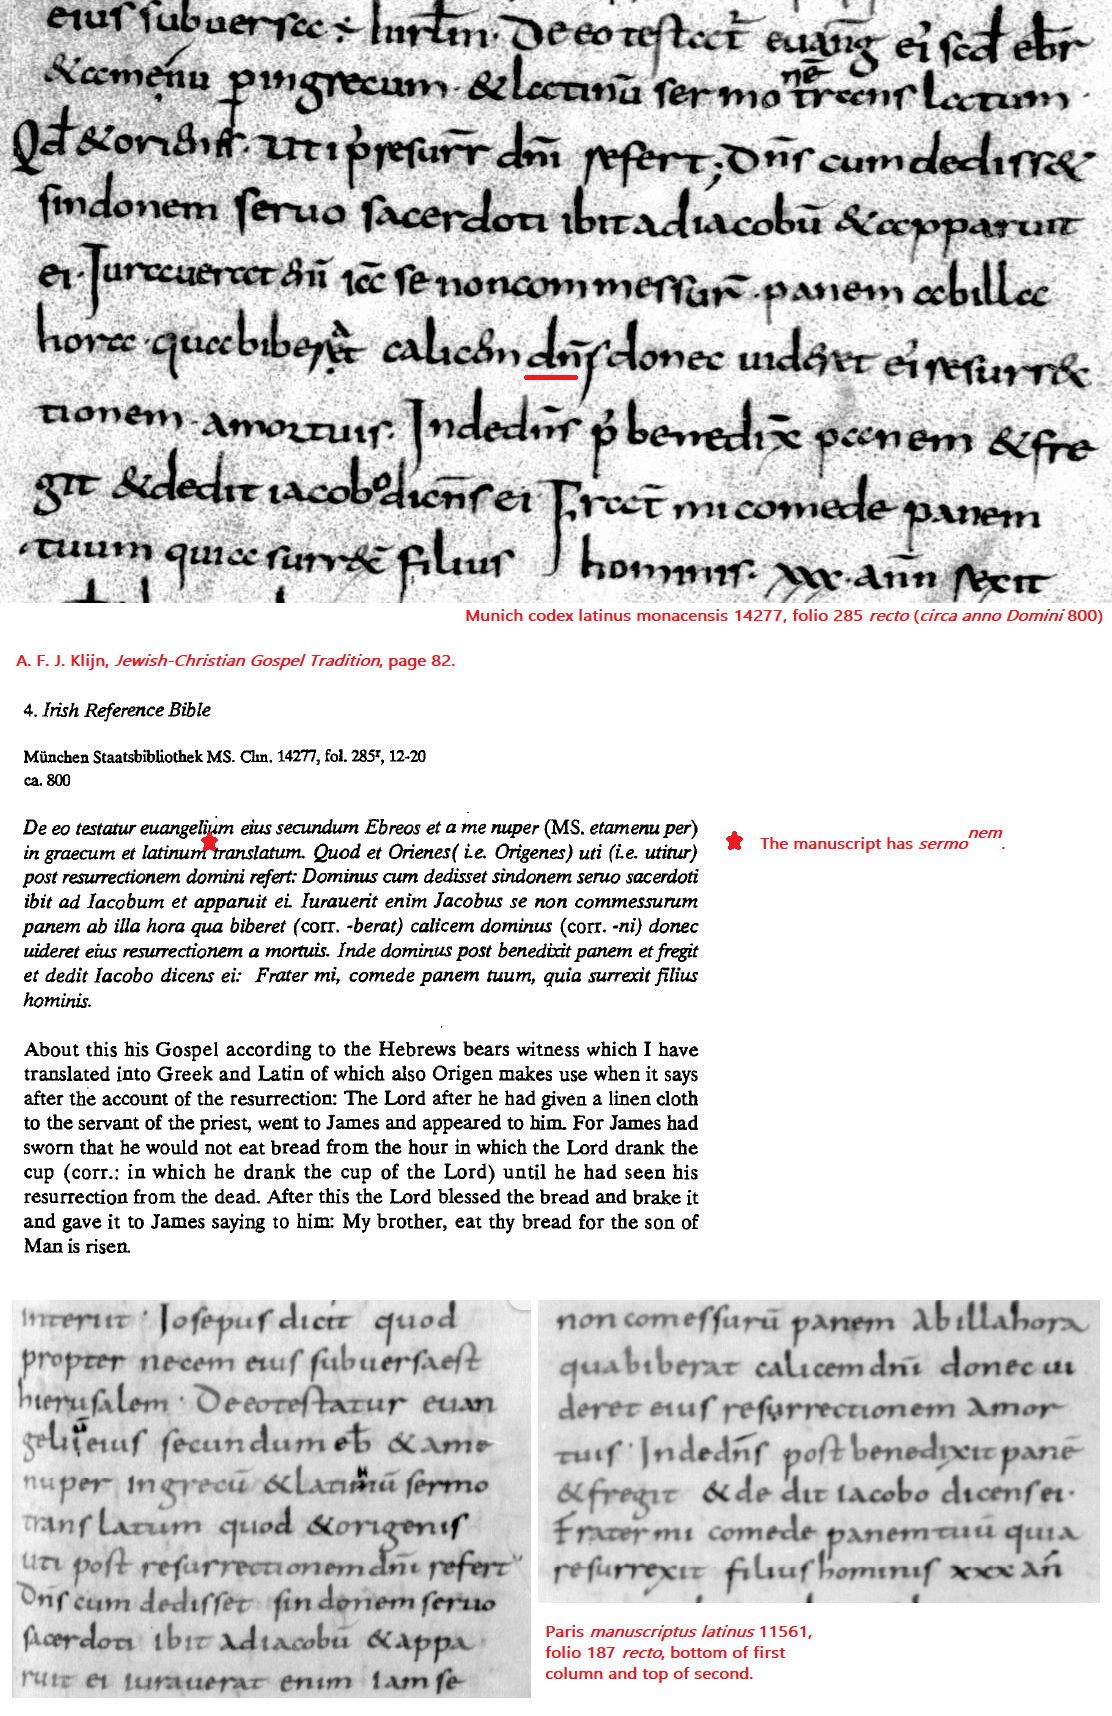 Munich CLM 14277, Folio 285 Recto, Lines 12-20, & Paris ML 11561, Folio 187 Recto, Split.png